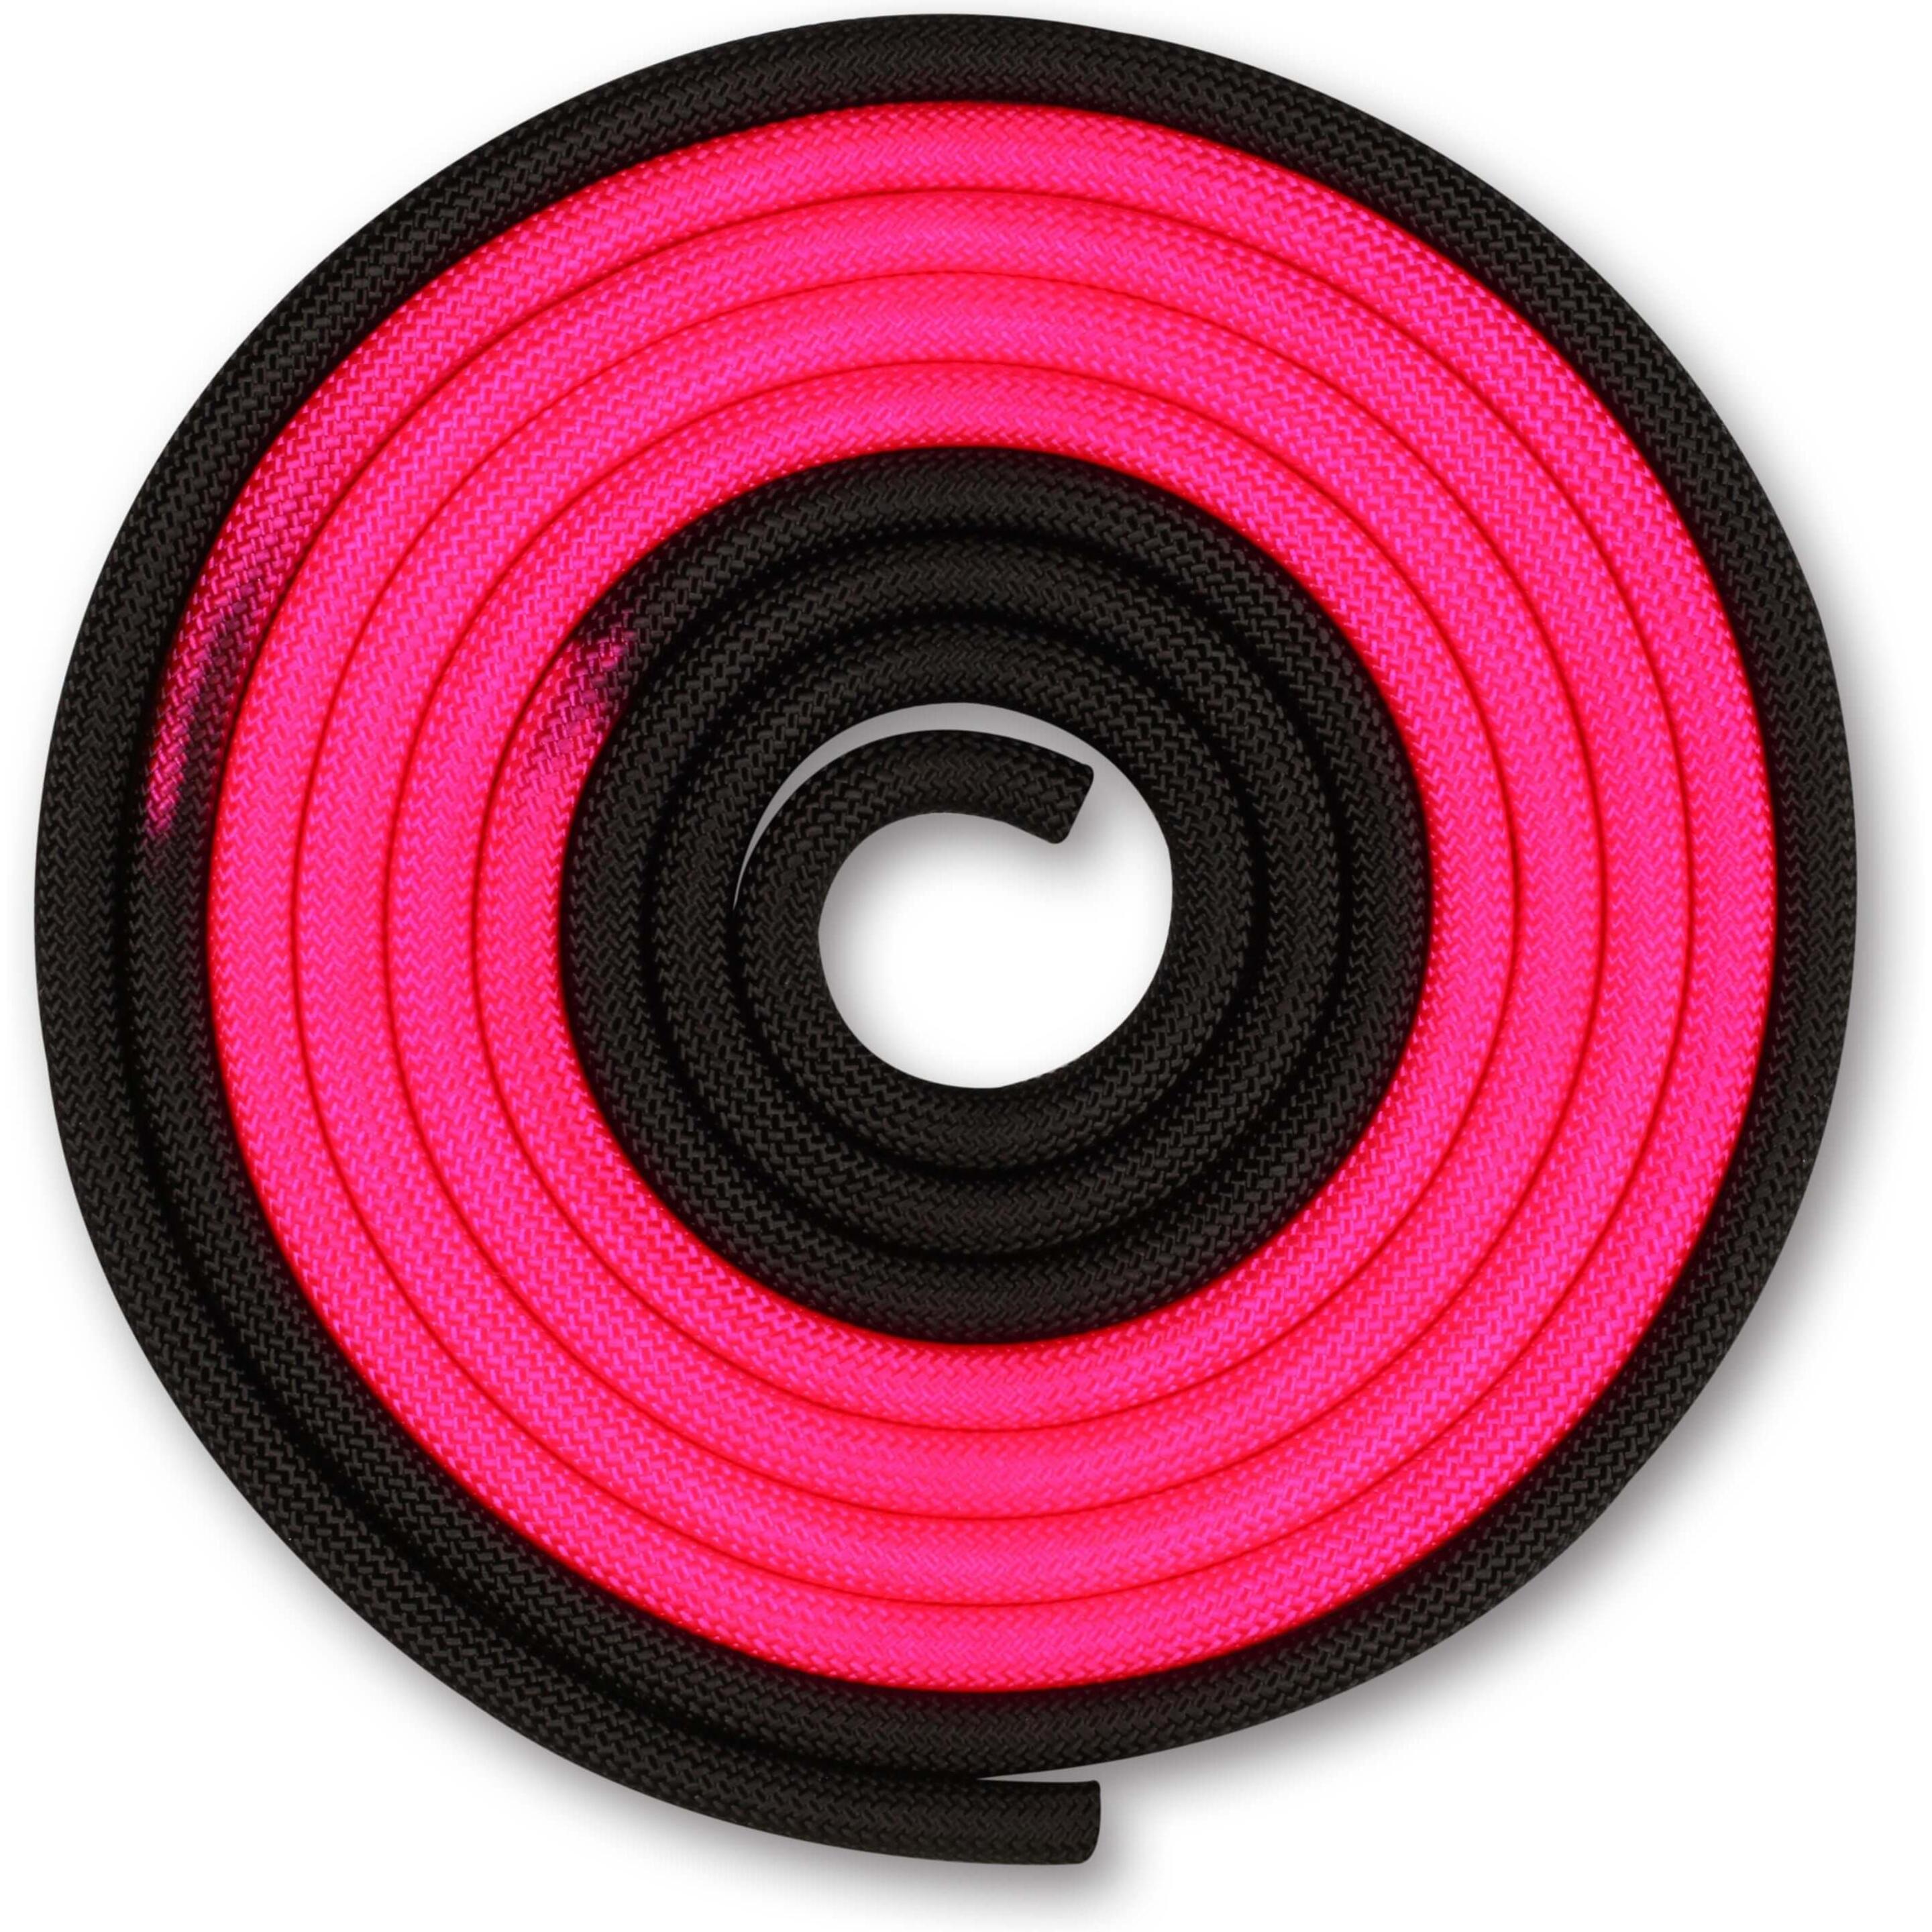 Cuerda Para Gimnasia Rítmica Ponderada 165g Indigo Bicolor 3 M - rosa - 